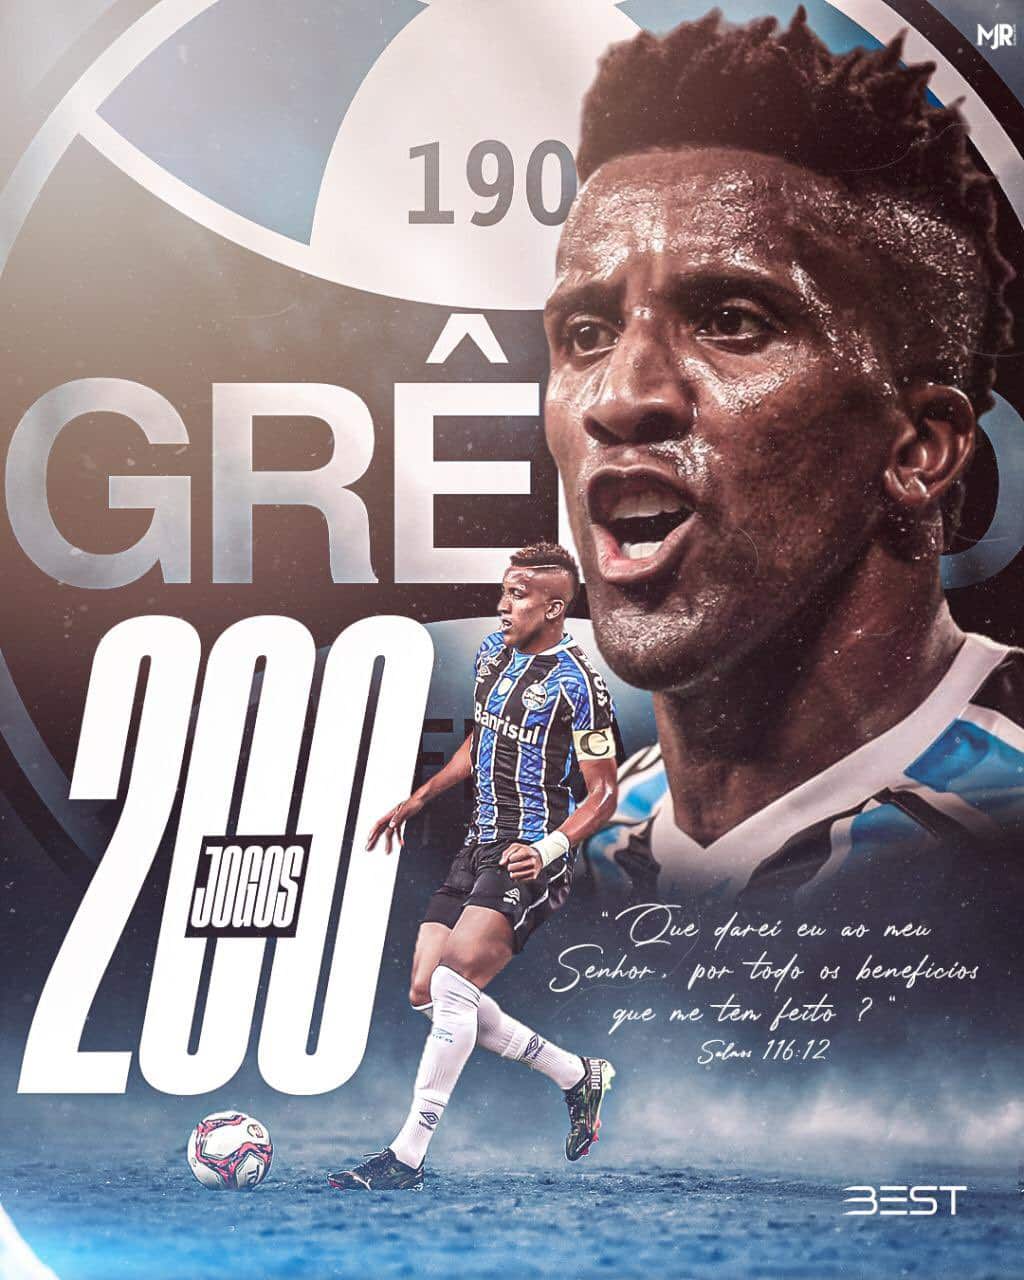 Cortez posta linda mensagem em comemoração aos 200 jogos com a camisa do Grêmio